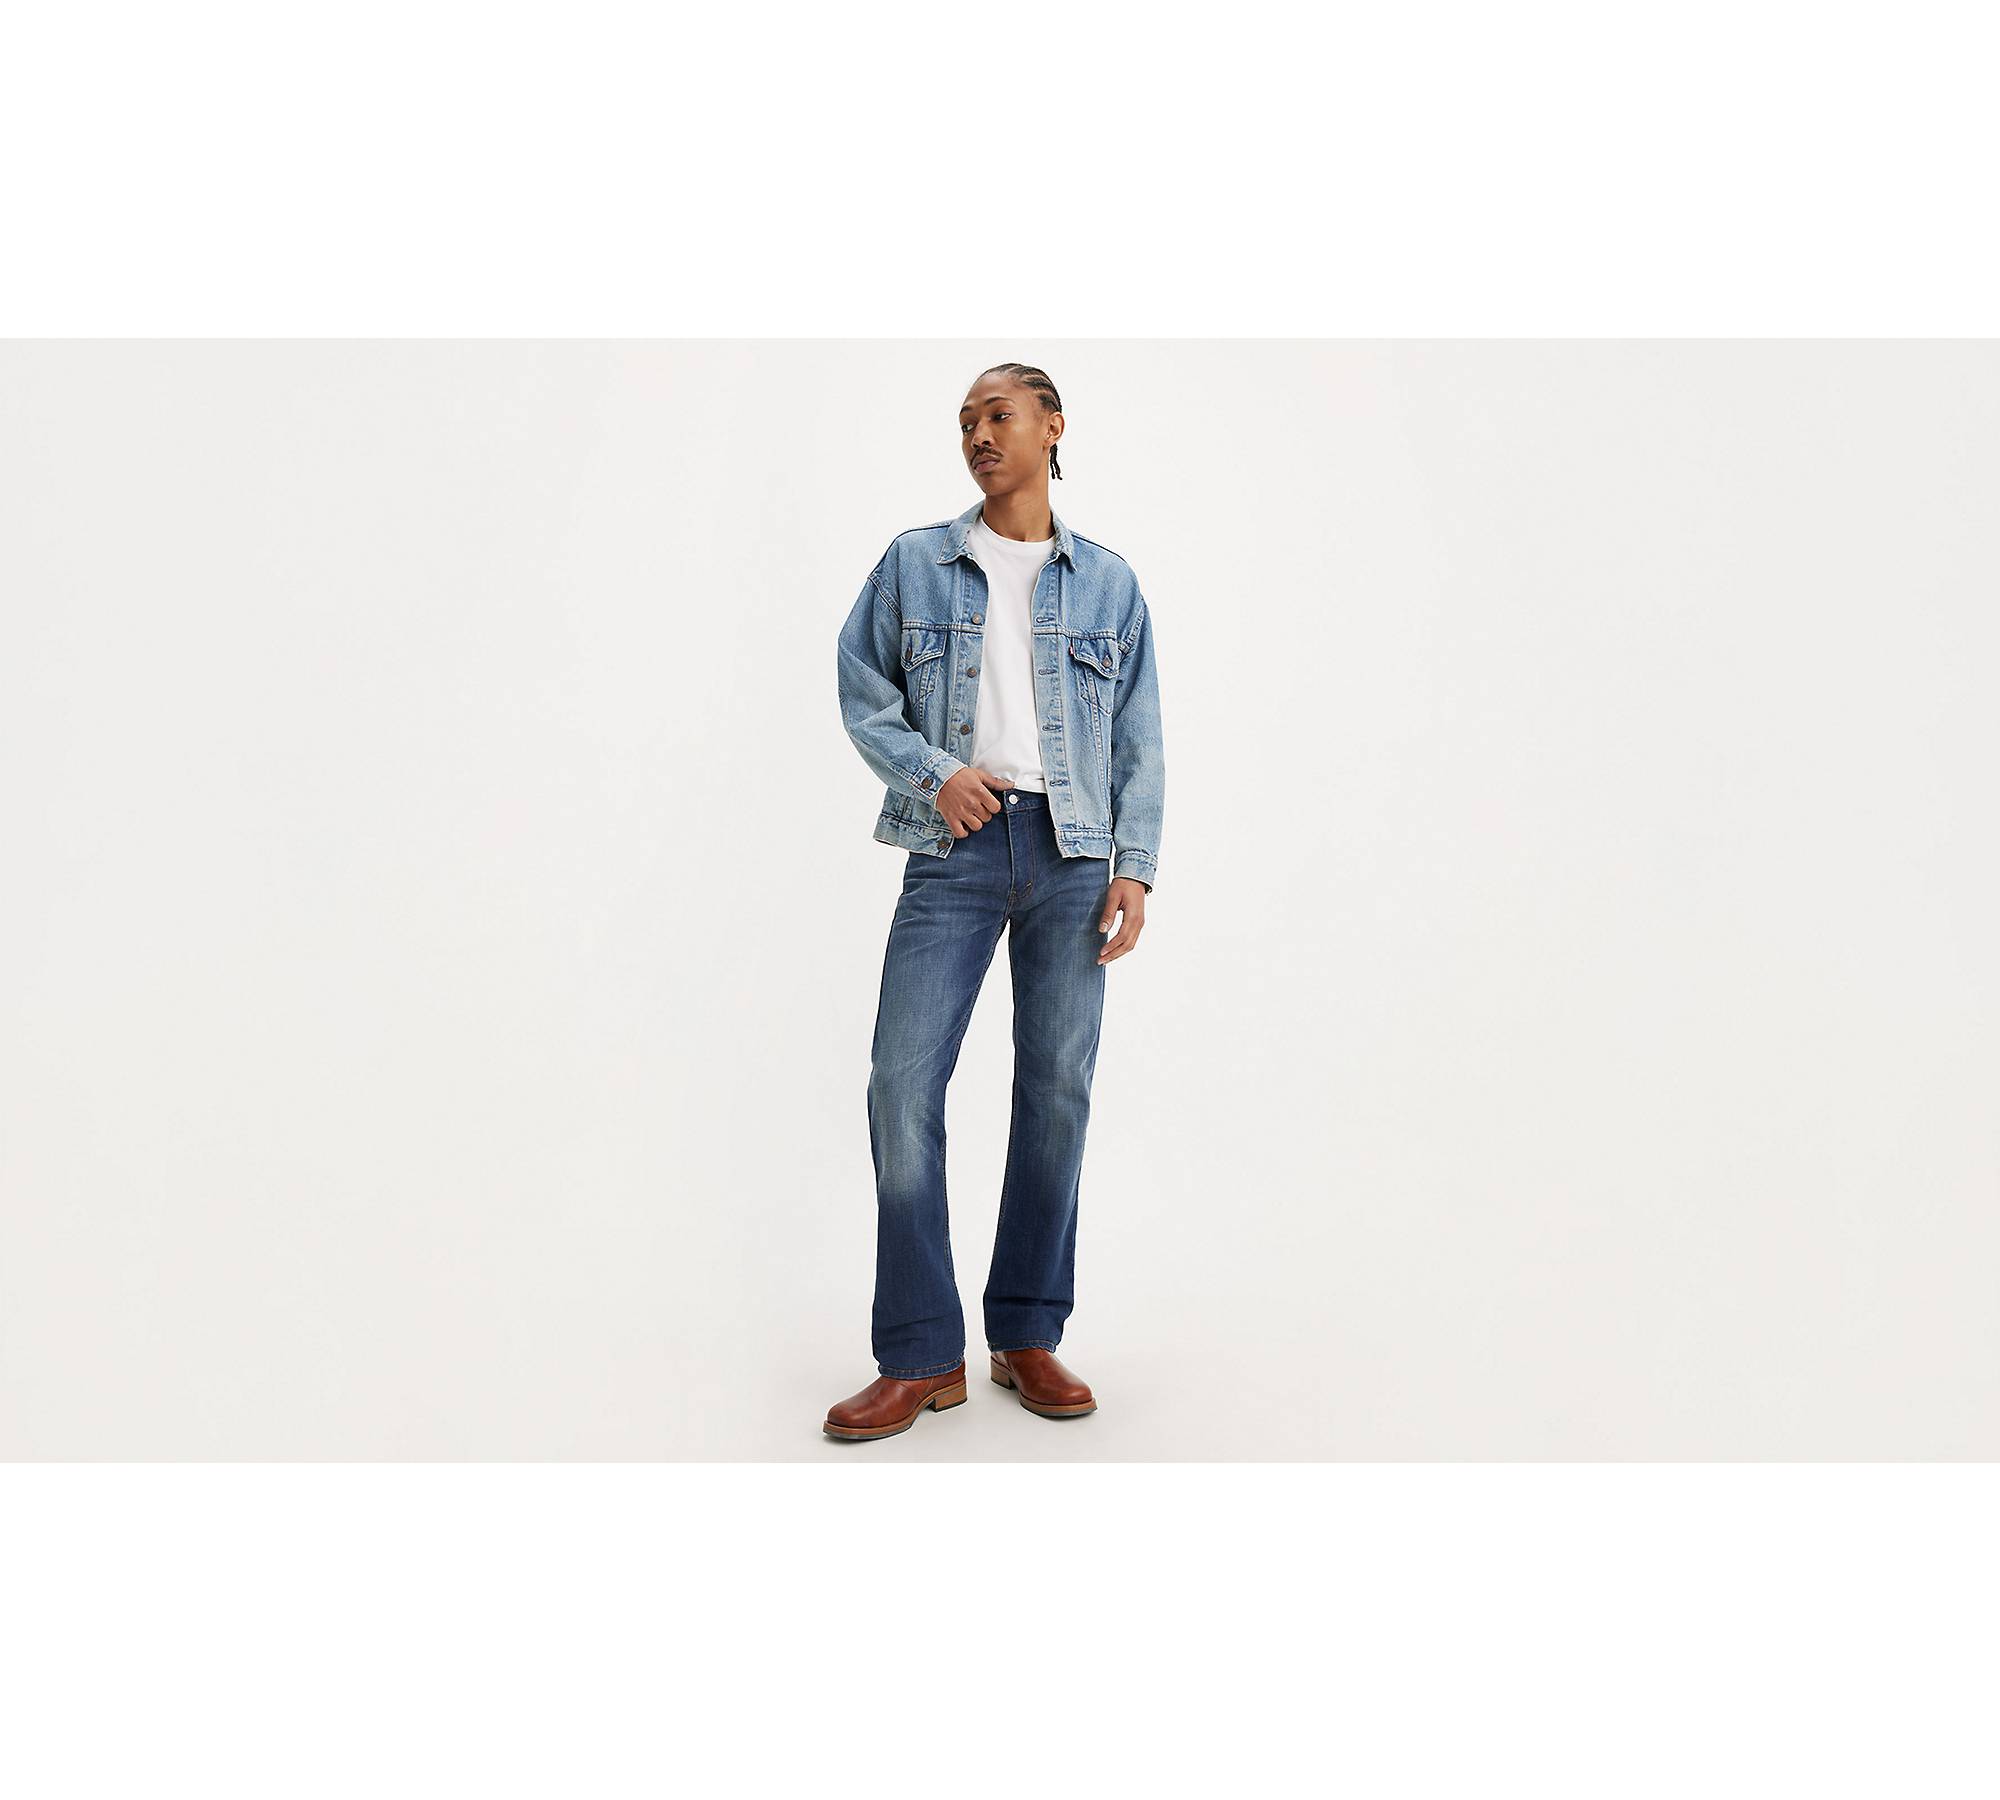 Levi's Men's 527 Slim Boot Cut Fit Jeans 